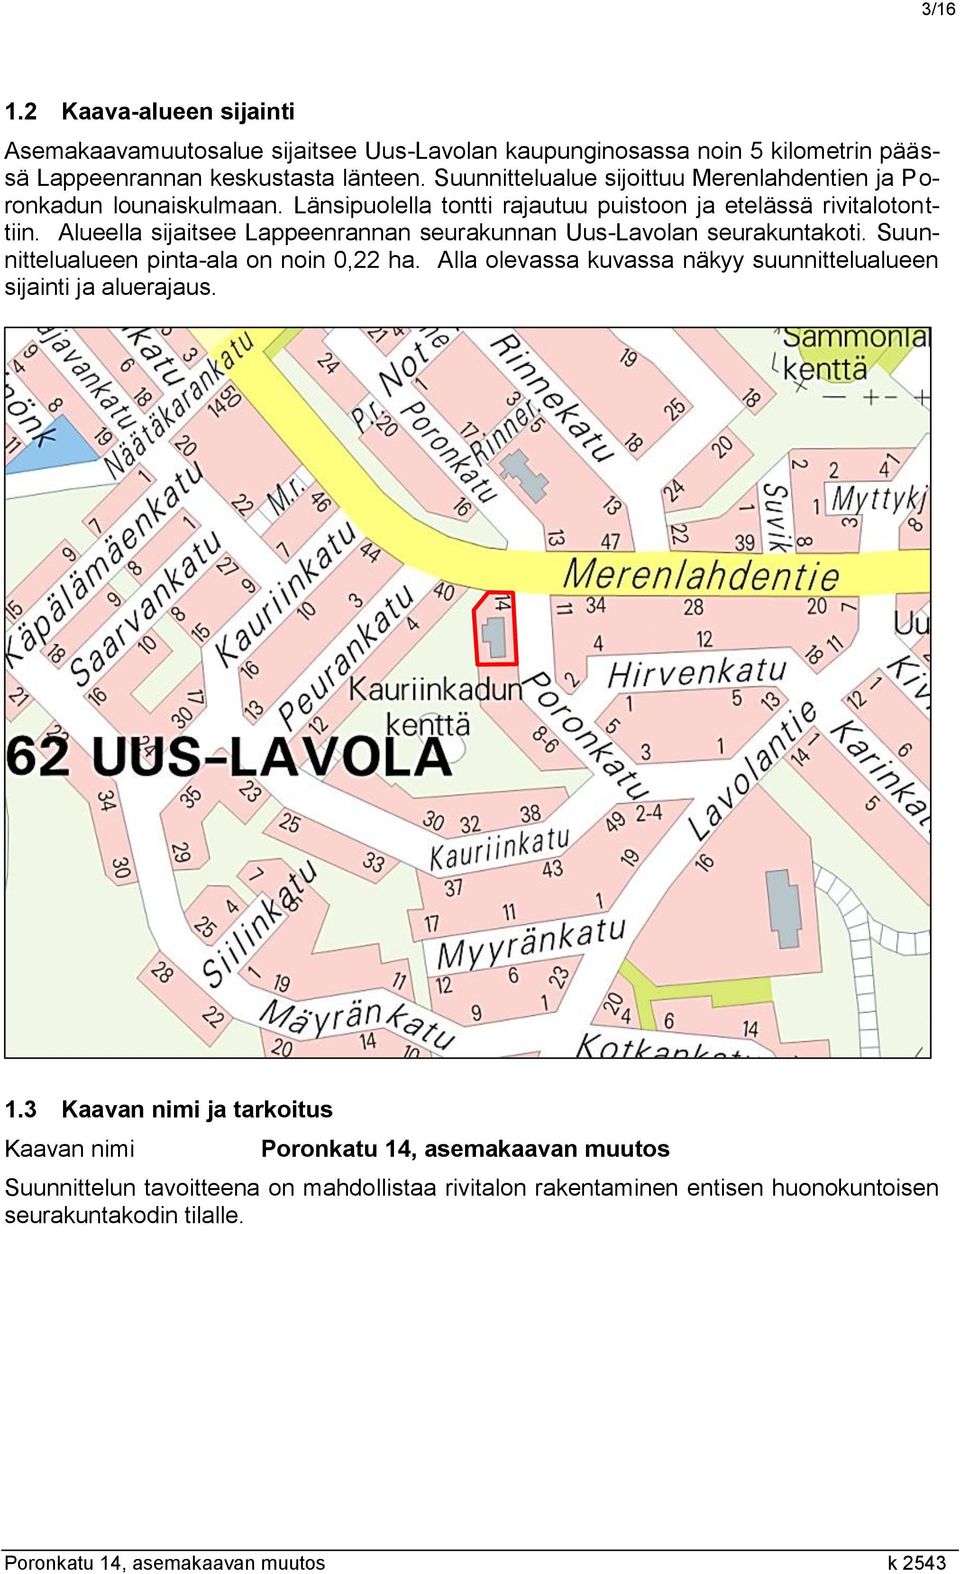 Alueella sijaitsee Lappeenrannan seurakunnan Uus-Lavolan seurakuntakoti. Suunnittelualueen pinta-ala on noin 0,22 ha.